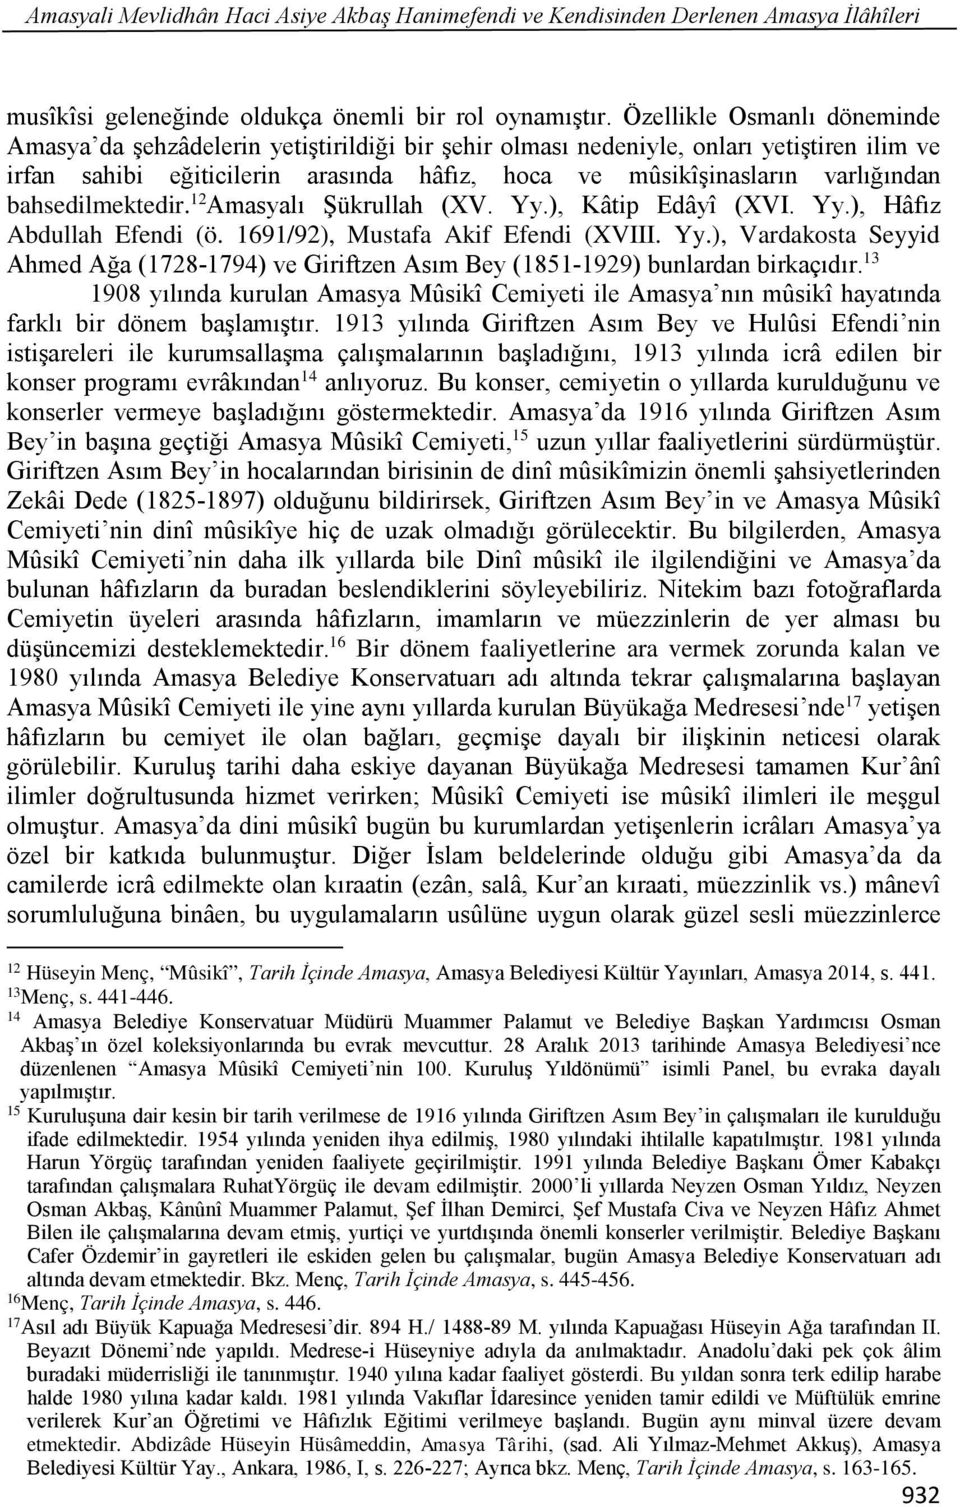 bahsedilmektedir. 12 Amasyalı Şükrullah (XV. Yy.), Kâtip Edâyî (XVI. Yy.), Hâfız Abdullah Efendi (ö. 1691/92), Mustafa Akif Efendi (XVIII. Yy.), Vardakosta Seyyid Ahmed Ağa (1728-1794) ve Giriftzen Asım Bey (1851-1929) bunlardan birkaçıdır.